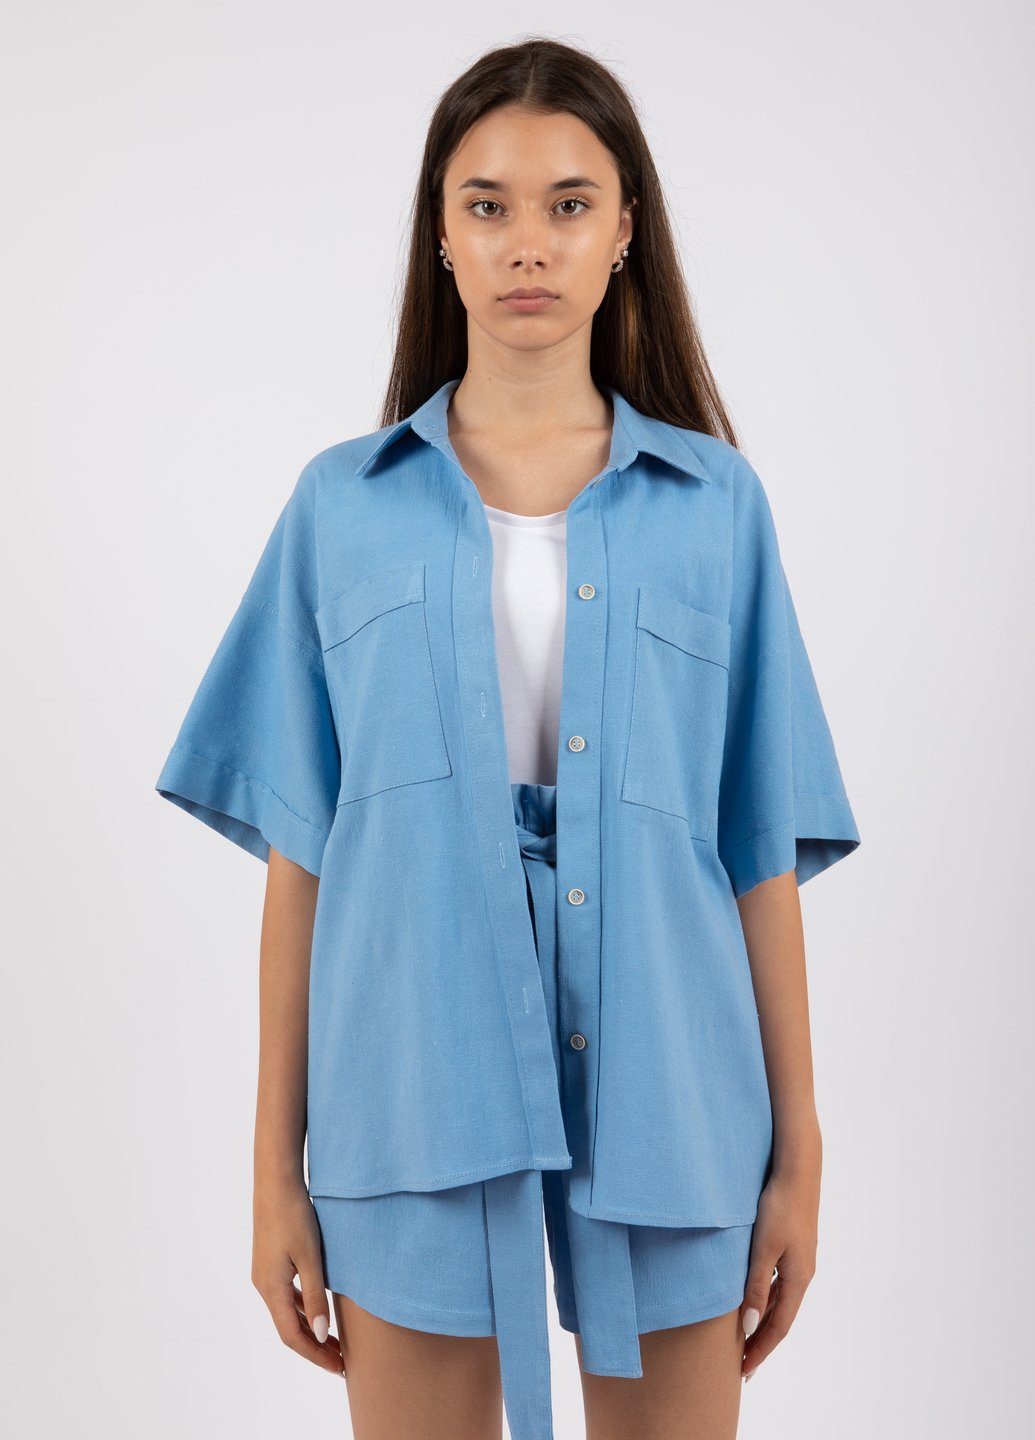 Купить Льняная оверсайз рубашка женская Merlini Касабланка 200000024 - Голубой, 46-48 в интернет-магазине